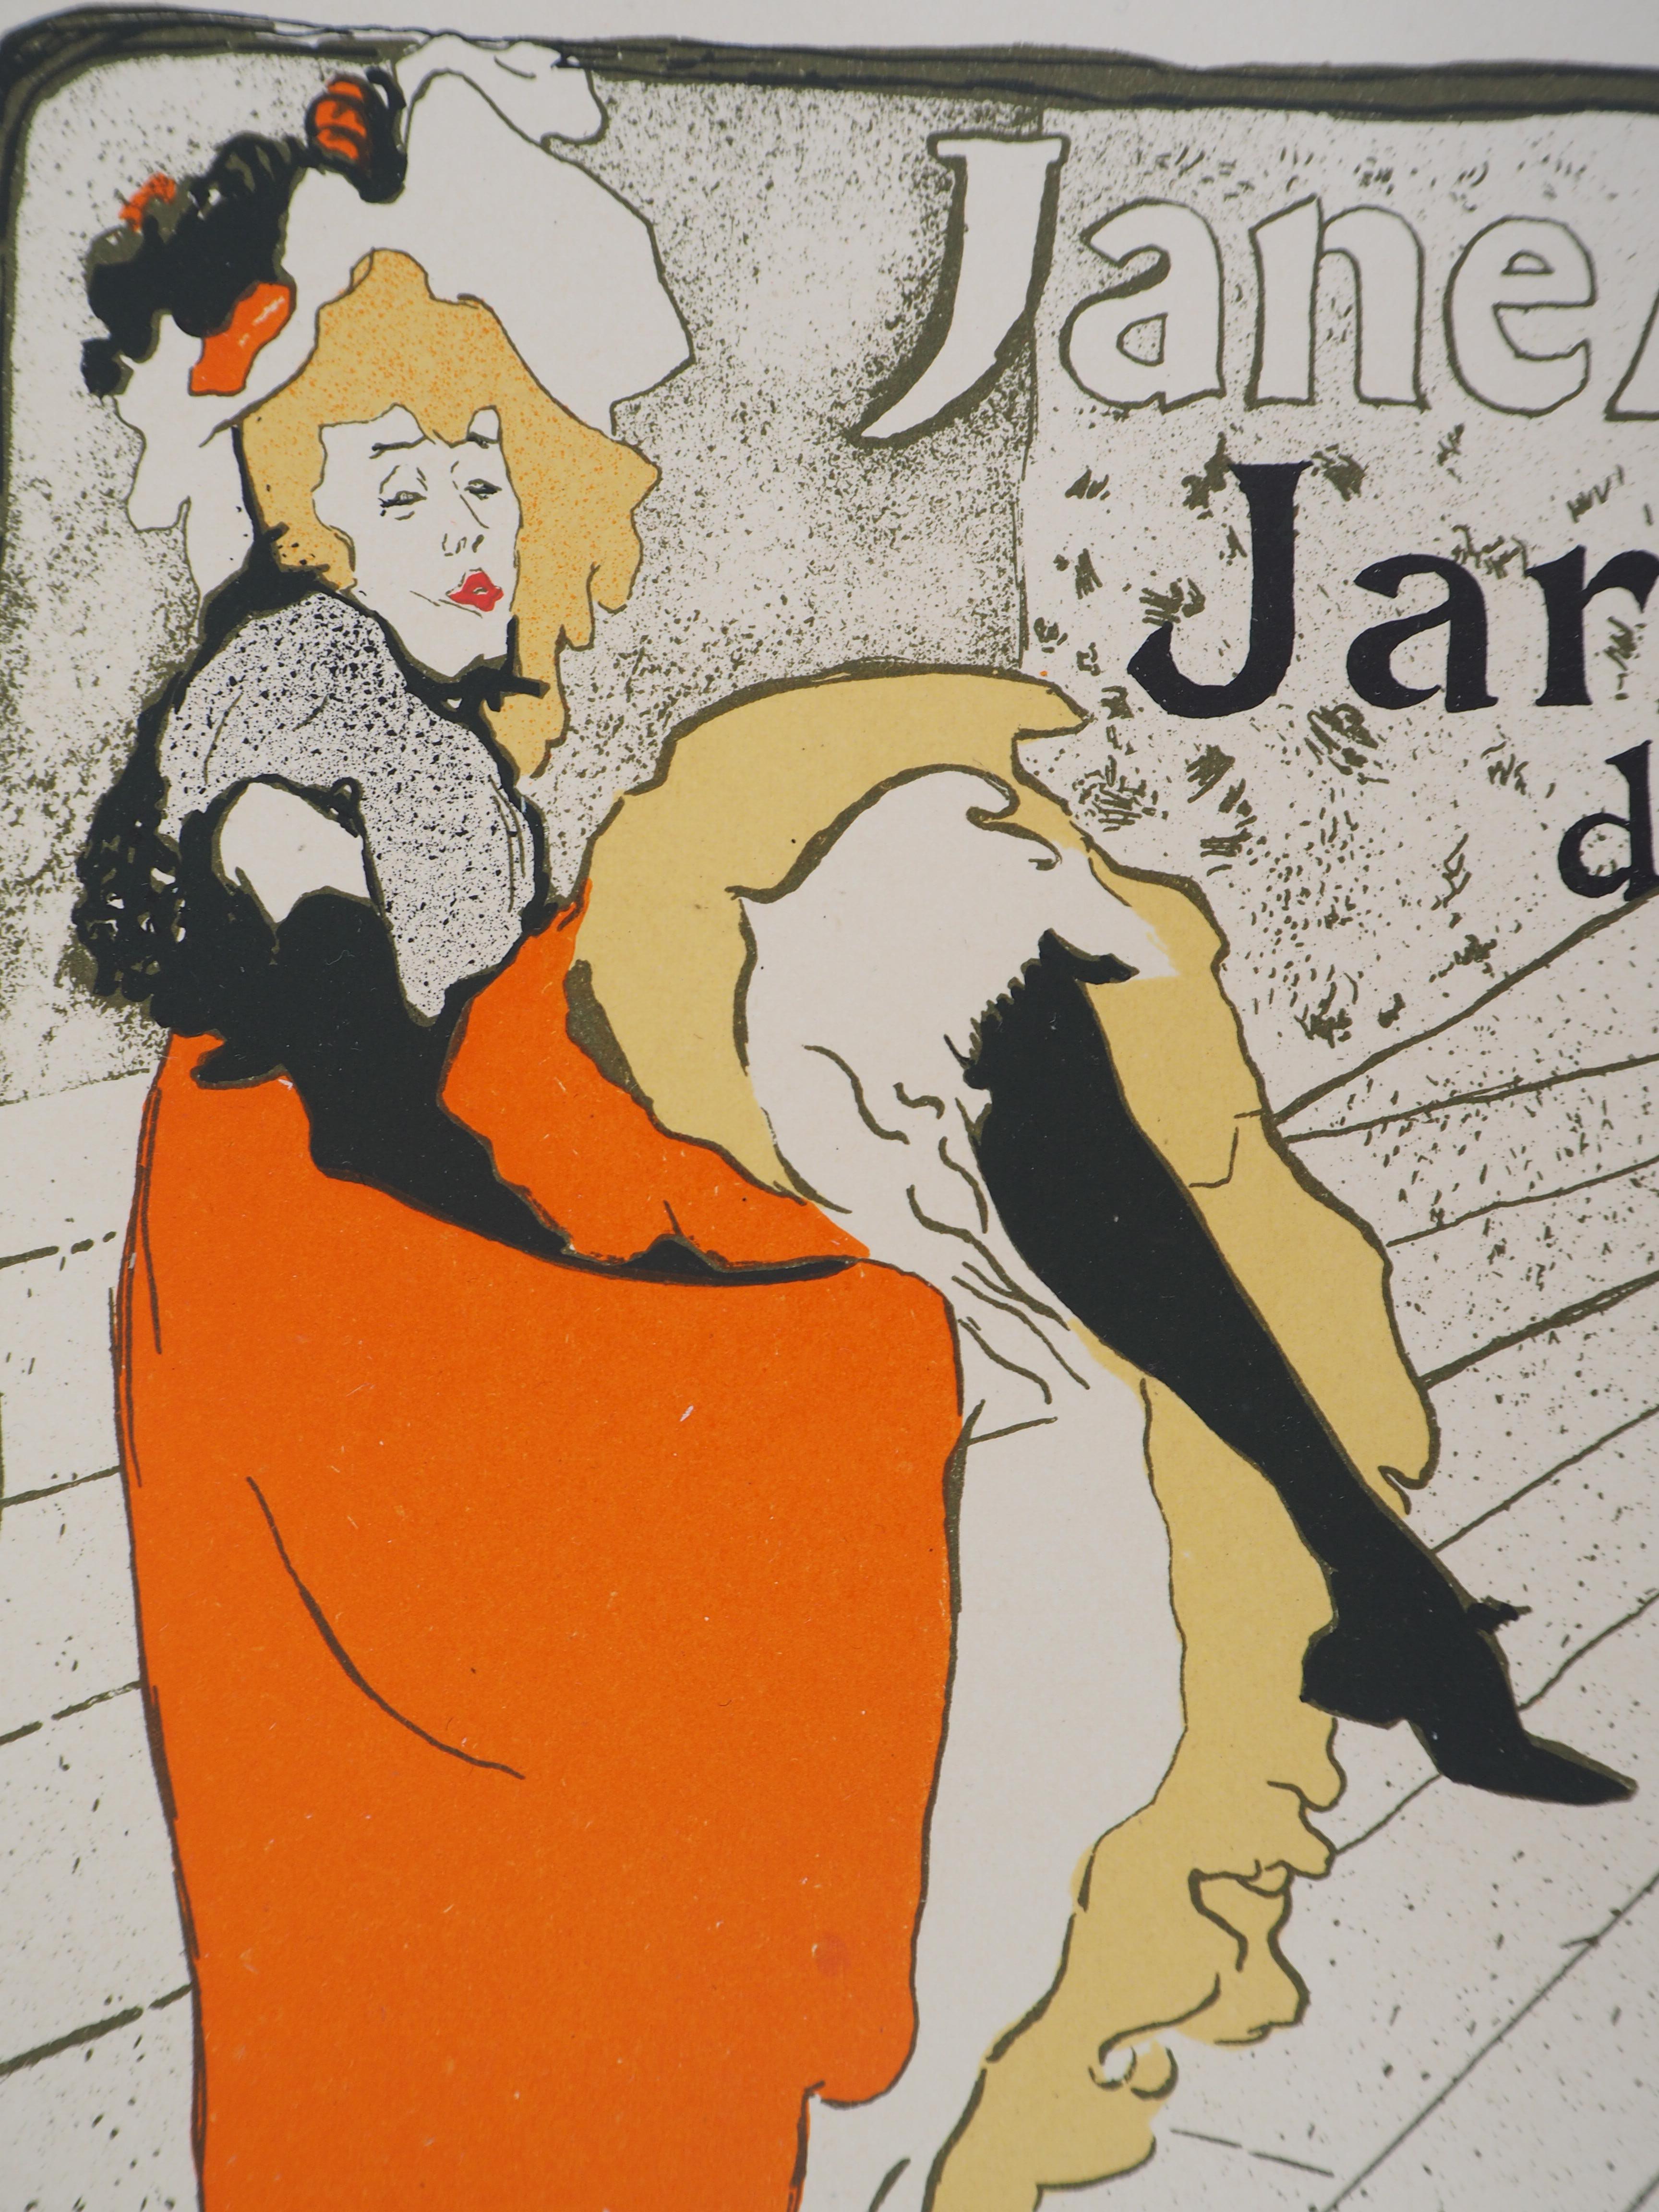 Jane Avril (Jardin de Paris) - Lithograph (Les Maîtres de l'Affiche), 1897 - Brown Figurative Print by (After) Henri Toulouse Lautrec